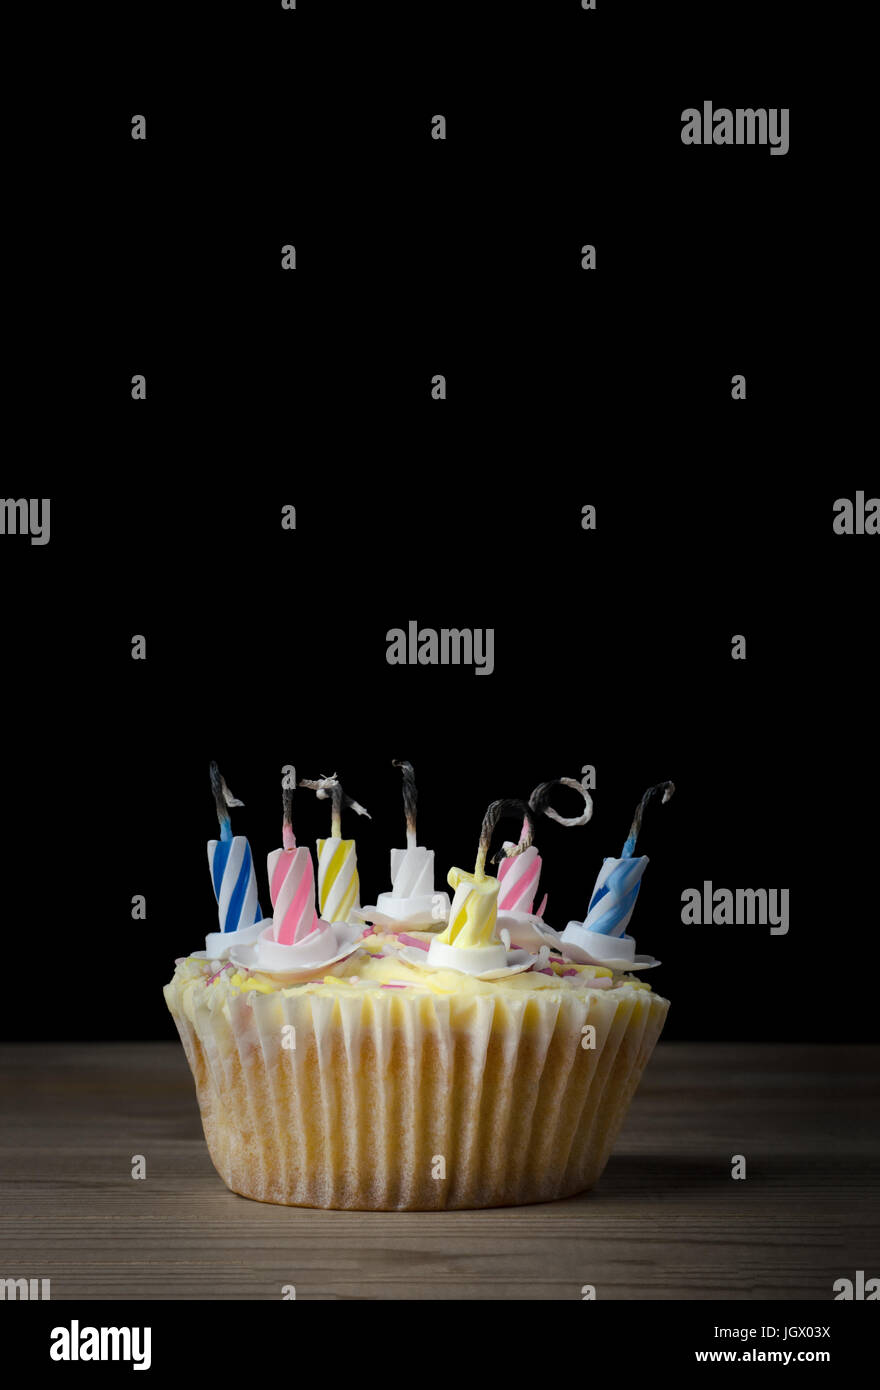 Un compleanno cupcake in un semplice caso di carta con sette candele a strisce che hanno incendiato e stato bruciato. Posto su una tavola di legno con nero b Foto Stock